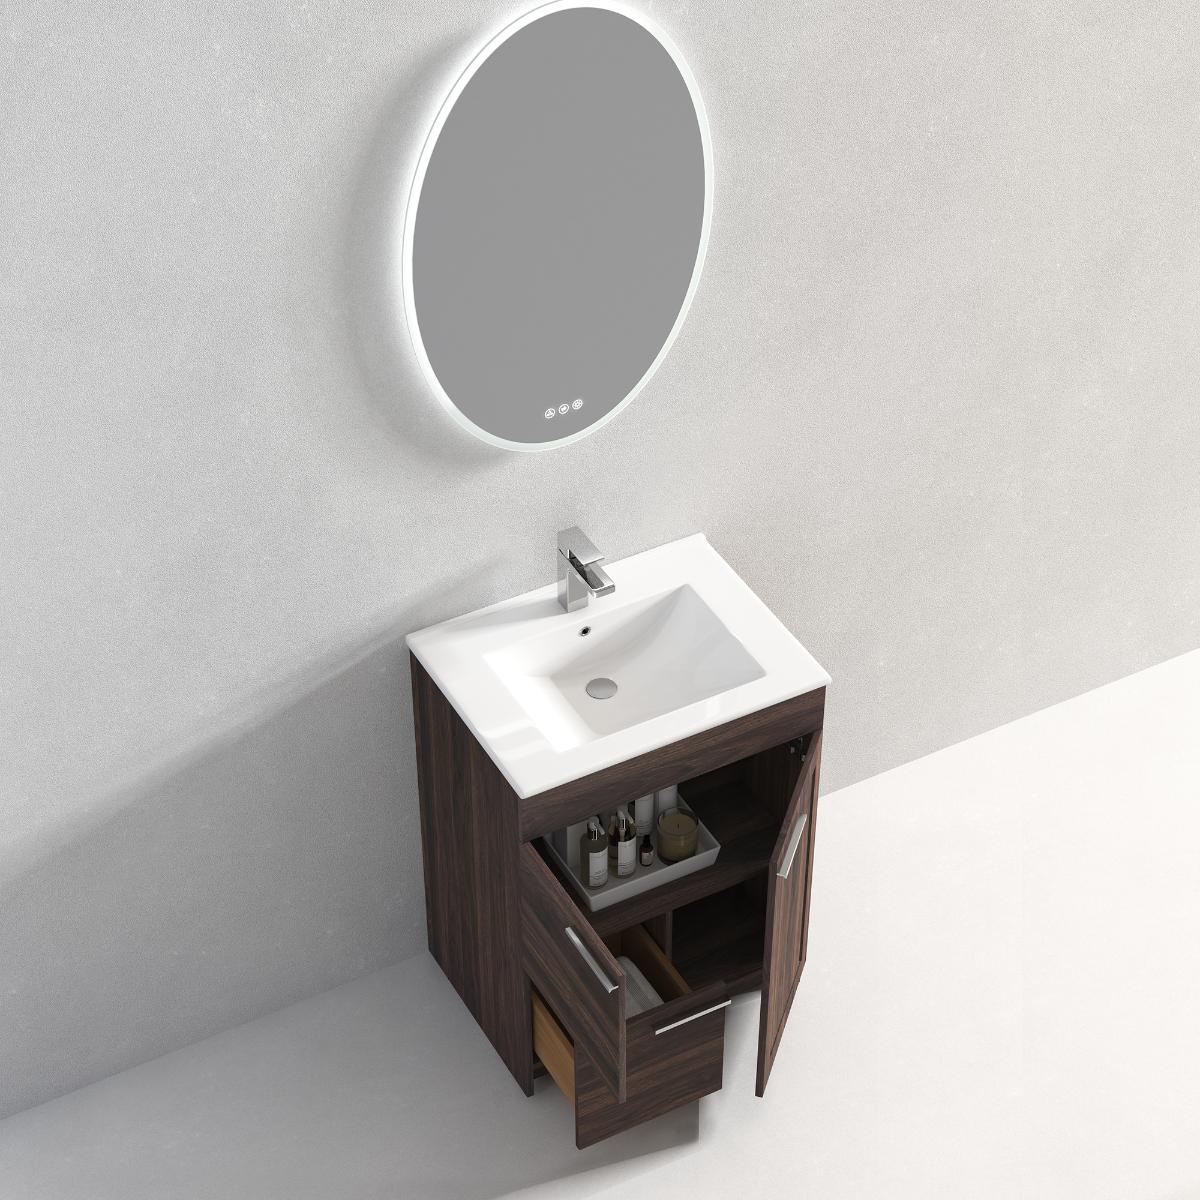 Hanover 24" Bathroom Vanity with Top - Contemporary Bathroom Vanity